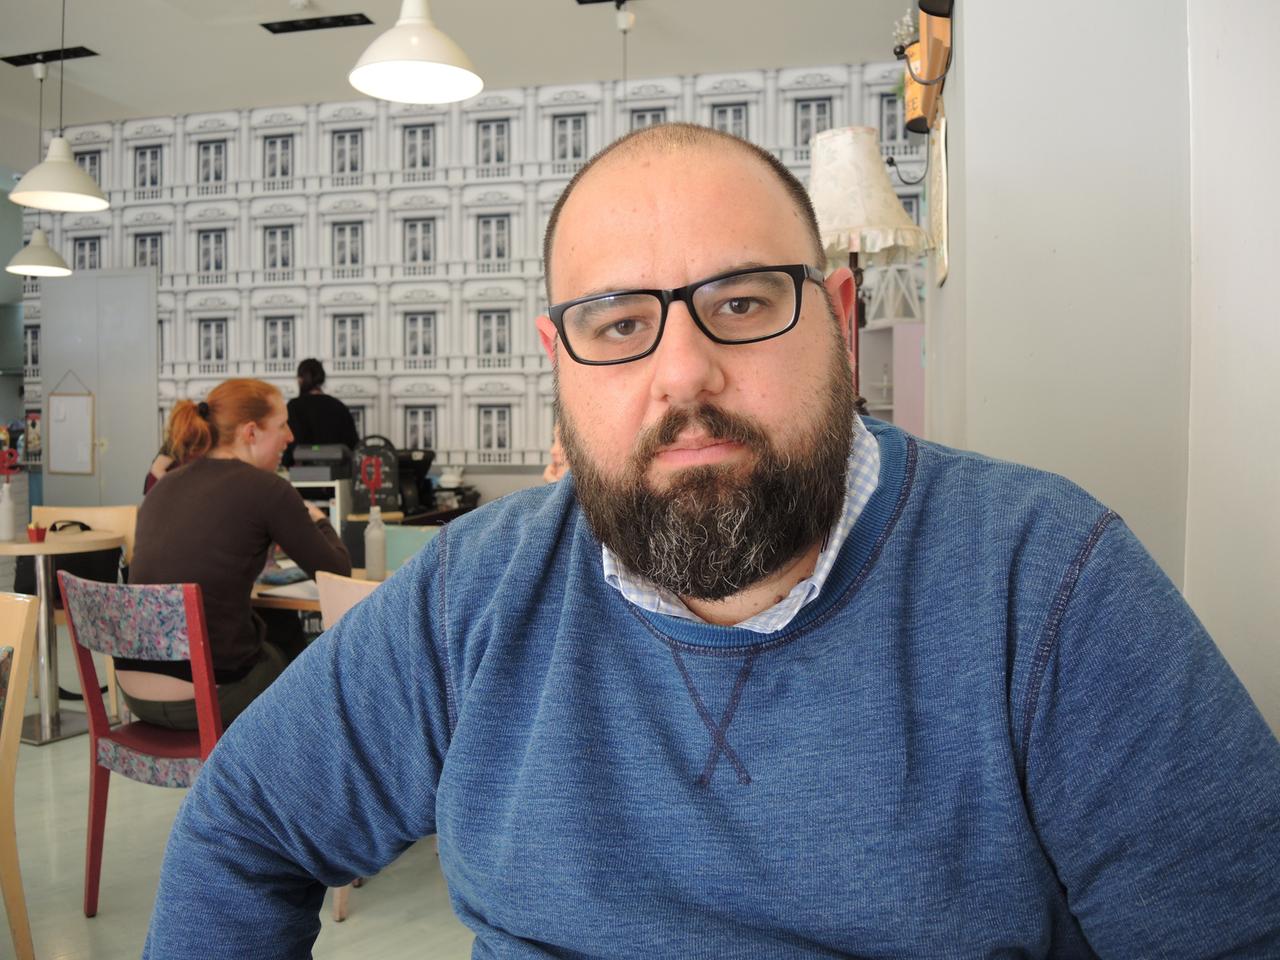 11.04.2018, Malta, Mosta: Der maltesische Blogger Manuel Delia sitzt in einem Café